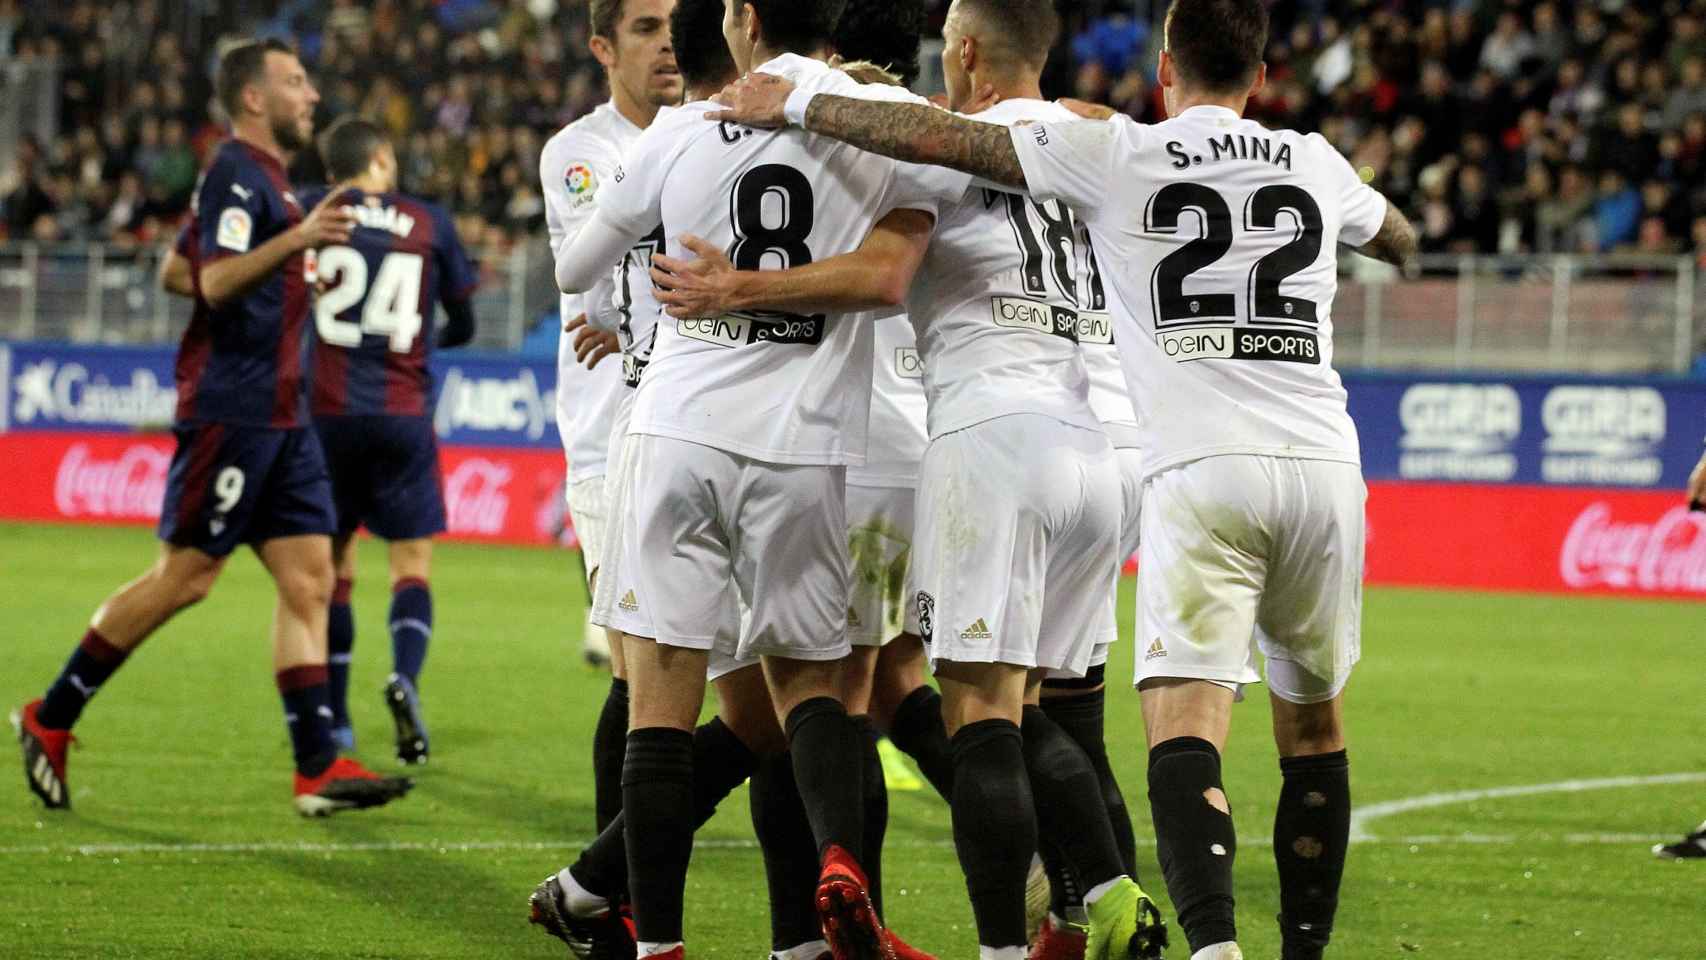 Los jugadores del Valencia celebran el gol ante el Eiba en el partido de La Liga